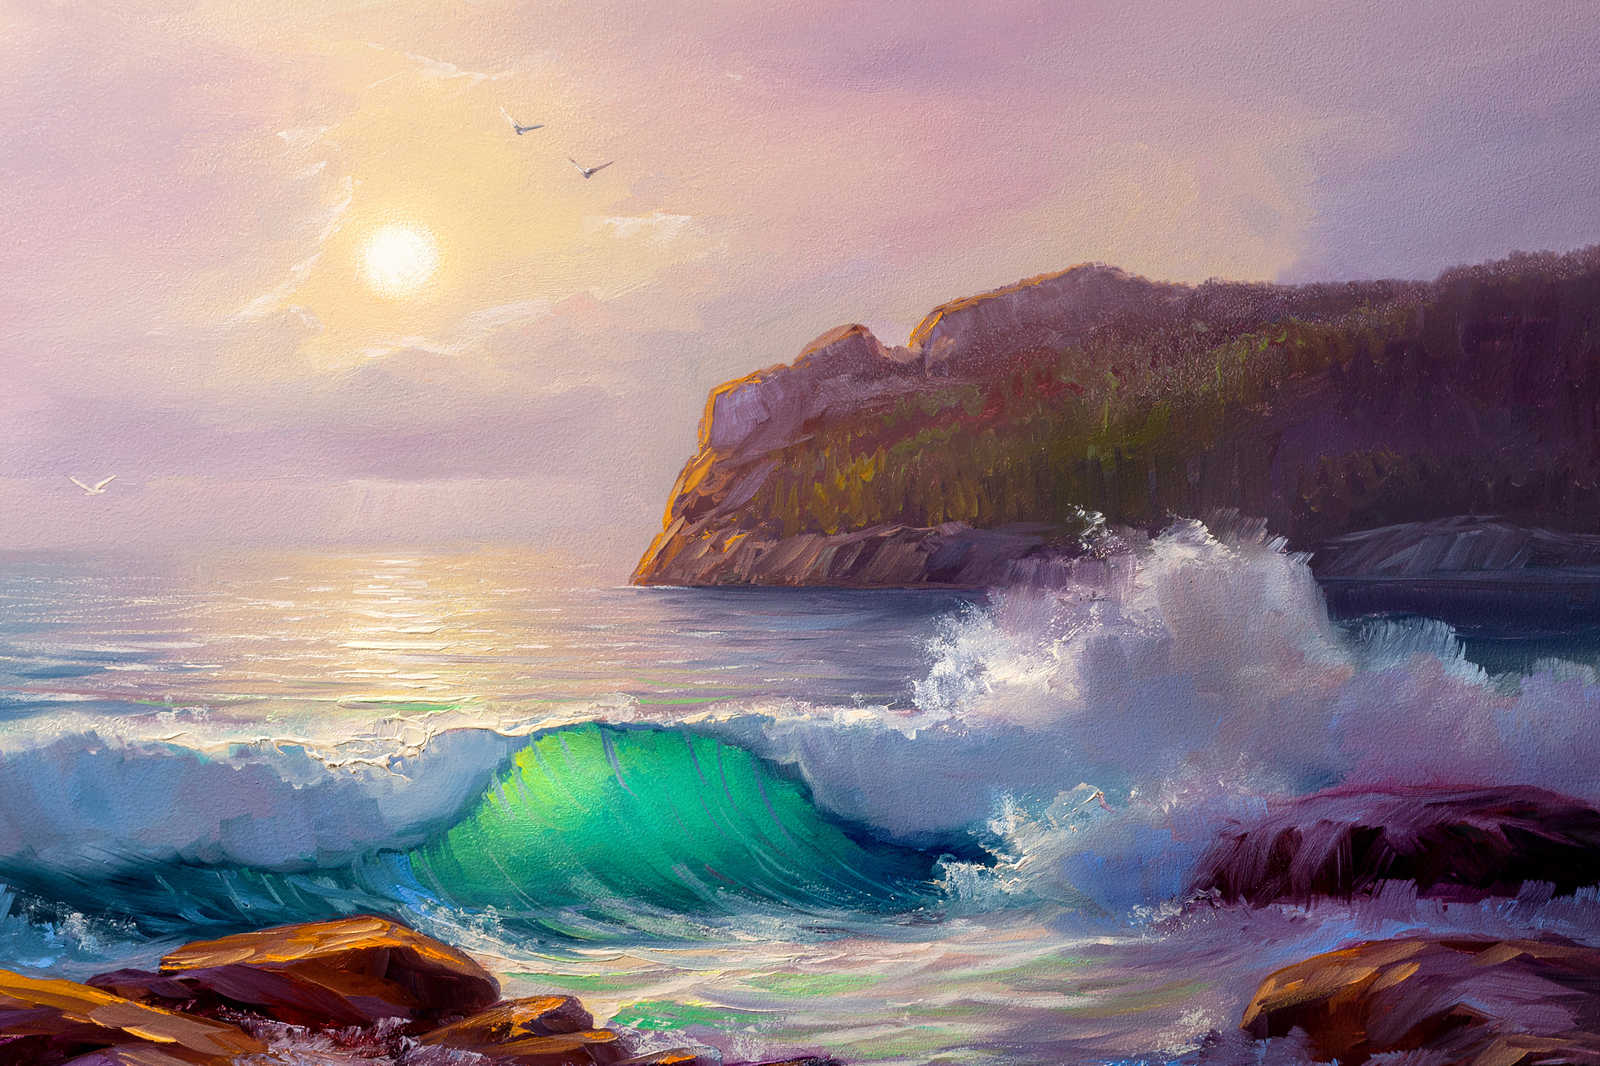             Peinture sur toile d'une côte au lever du soleil - 0,90 m x 0,60 m
        